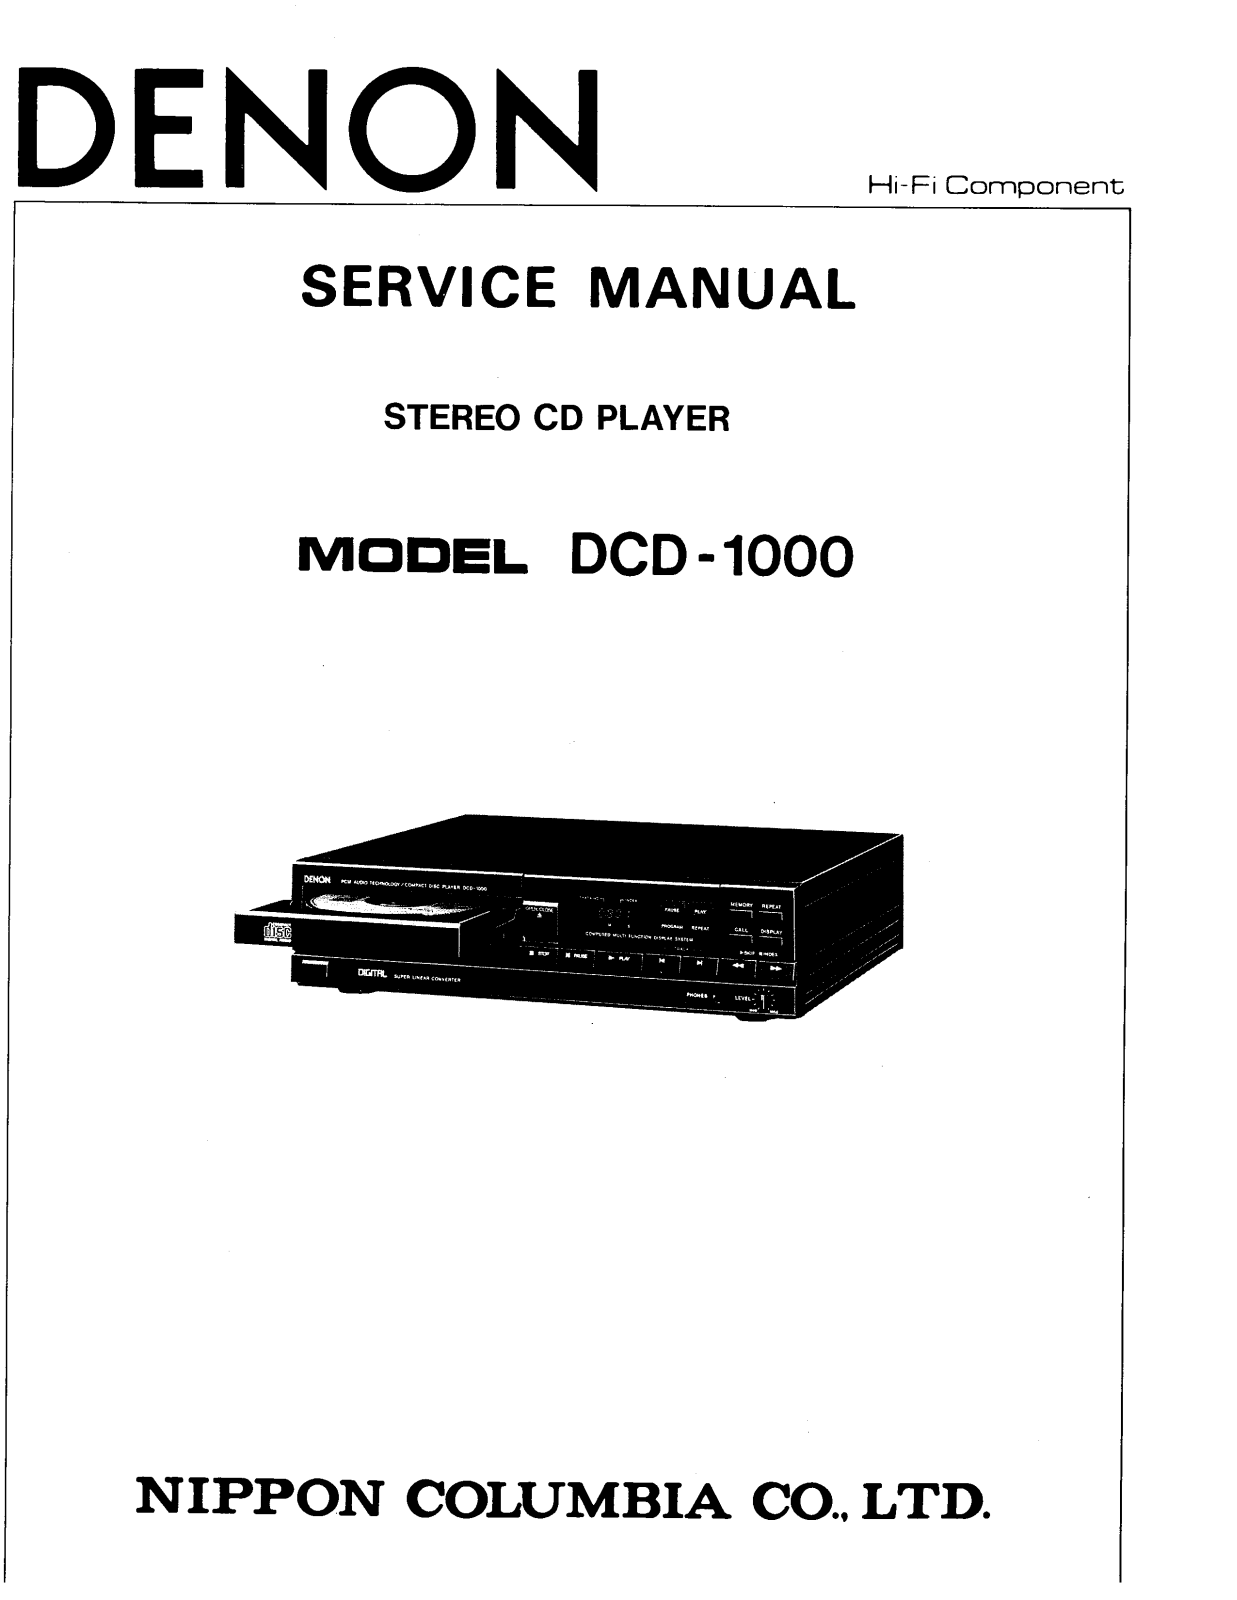 Denon DCD-1000 Service Manual